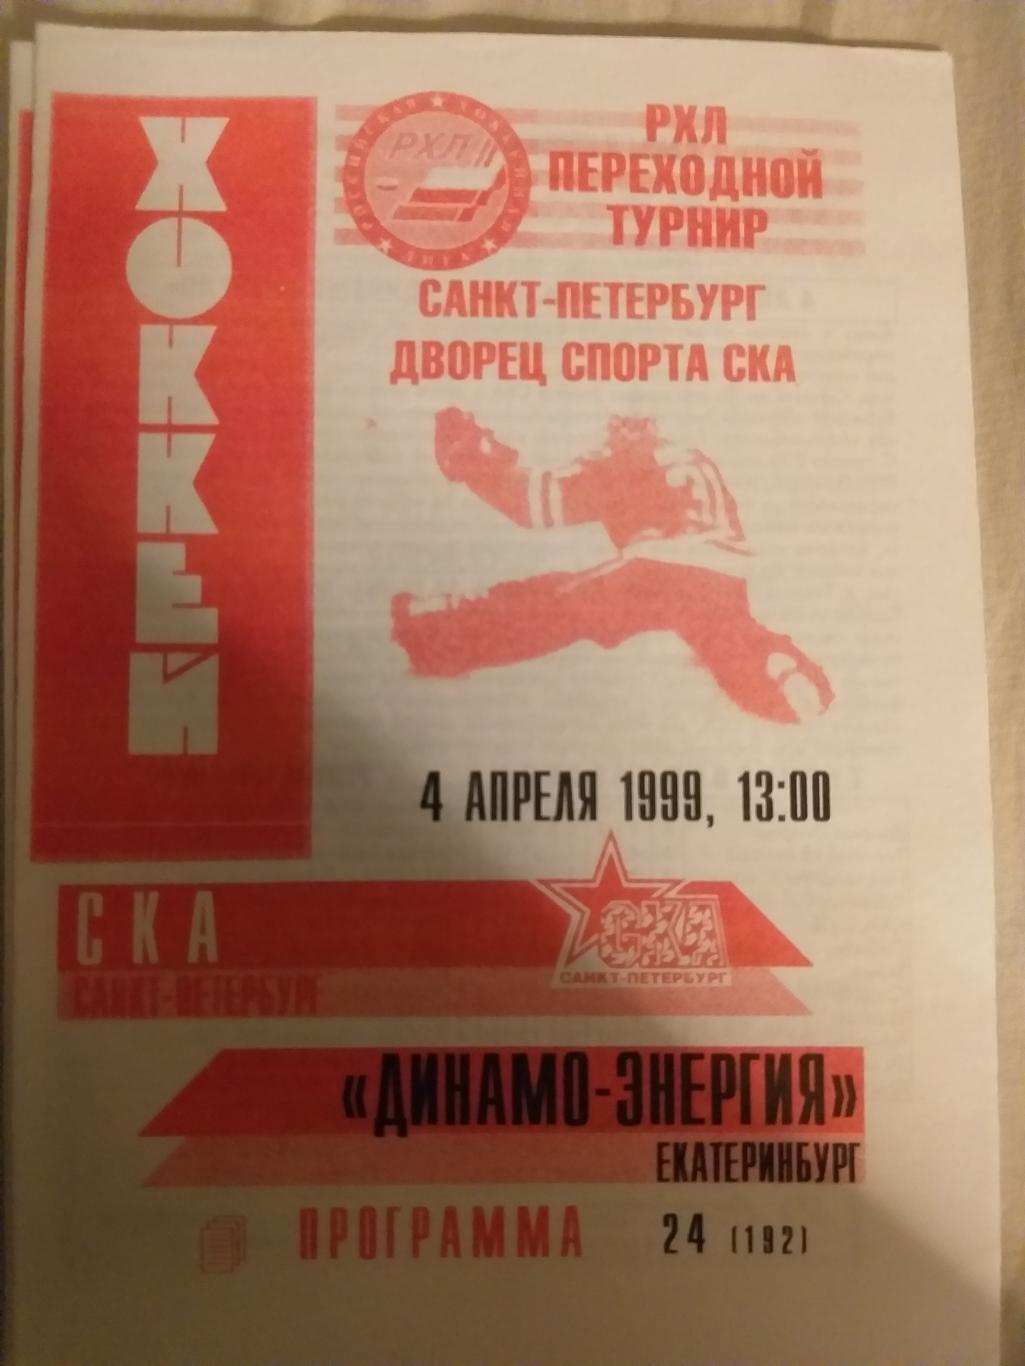 СКА(Санкт-Петербург)- Динамо-Энергия(Екатеринбург) 04.04.1999 второй вид